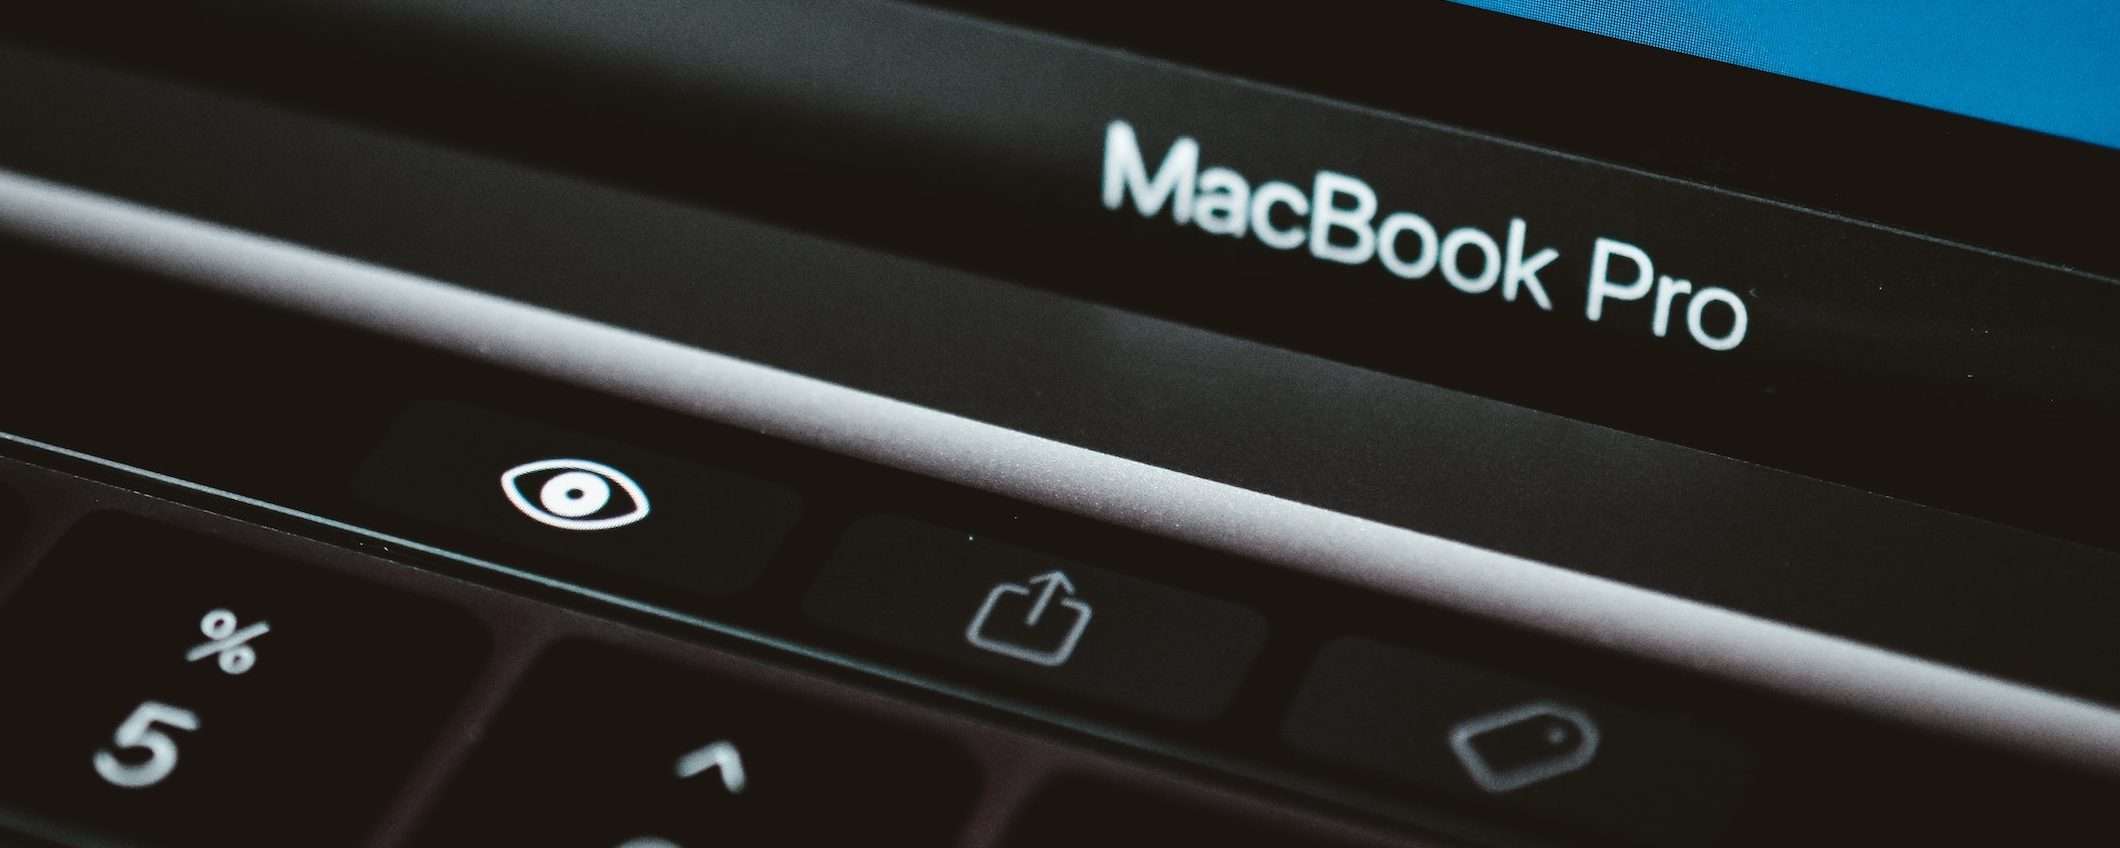 MacBook Pro: Apple Pencil al posto della Touch Bar